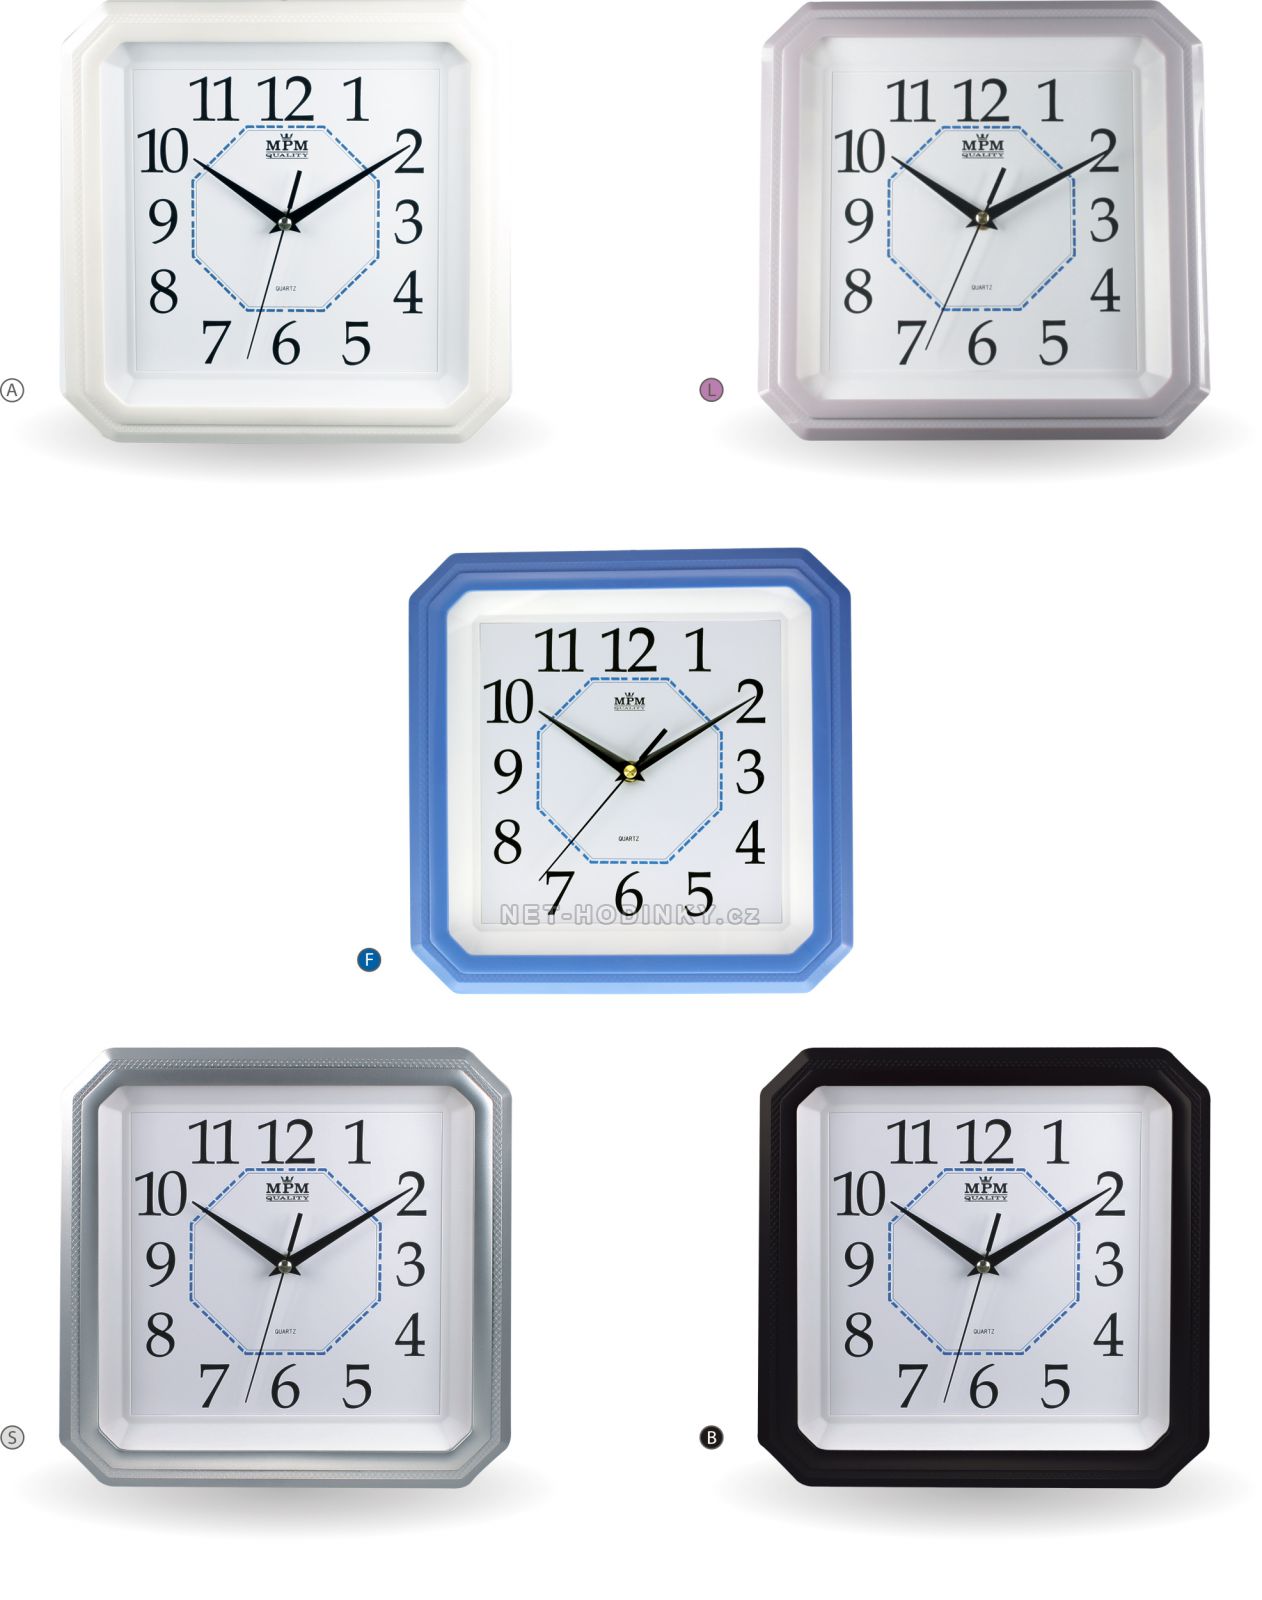 Dětské plastové nástěnné hodiny s různými motivy E01.2418